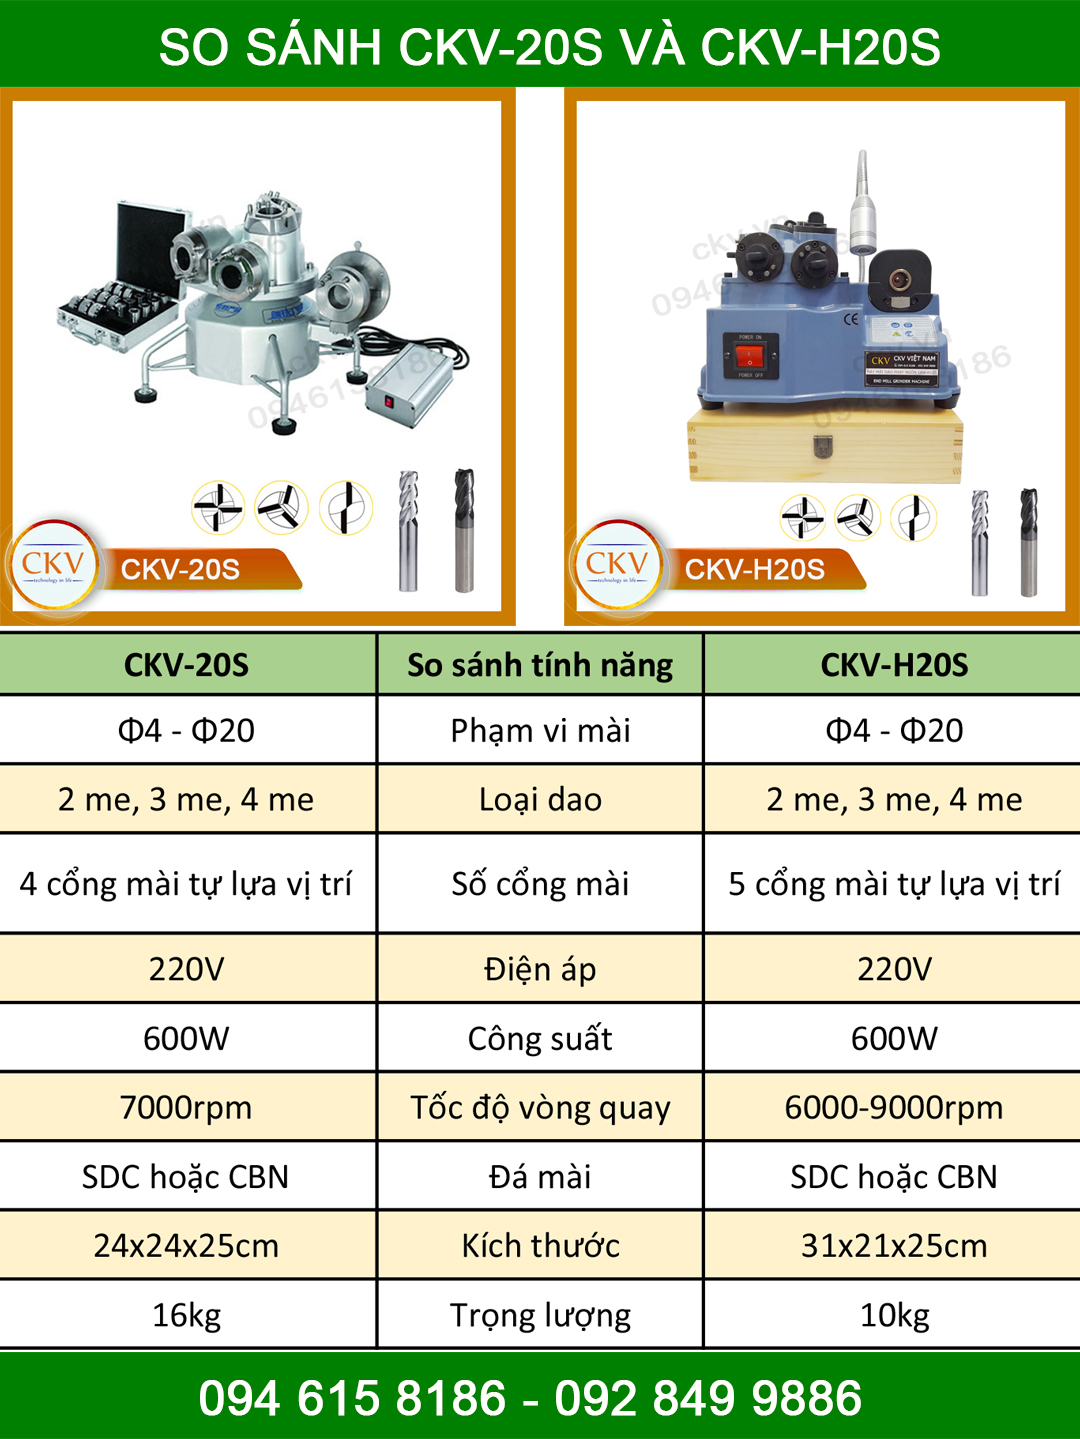 So sánh CKV-20S và CKV-H20S